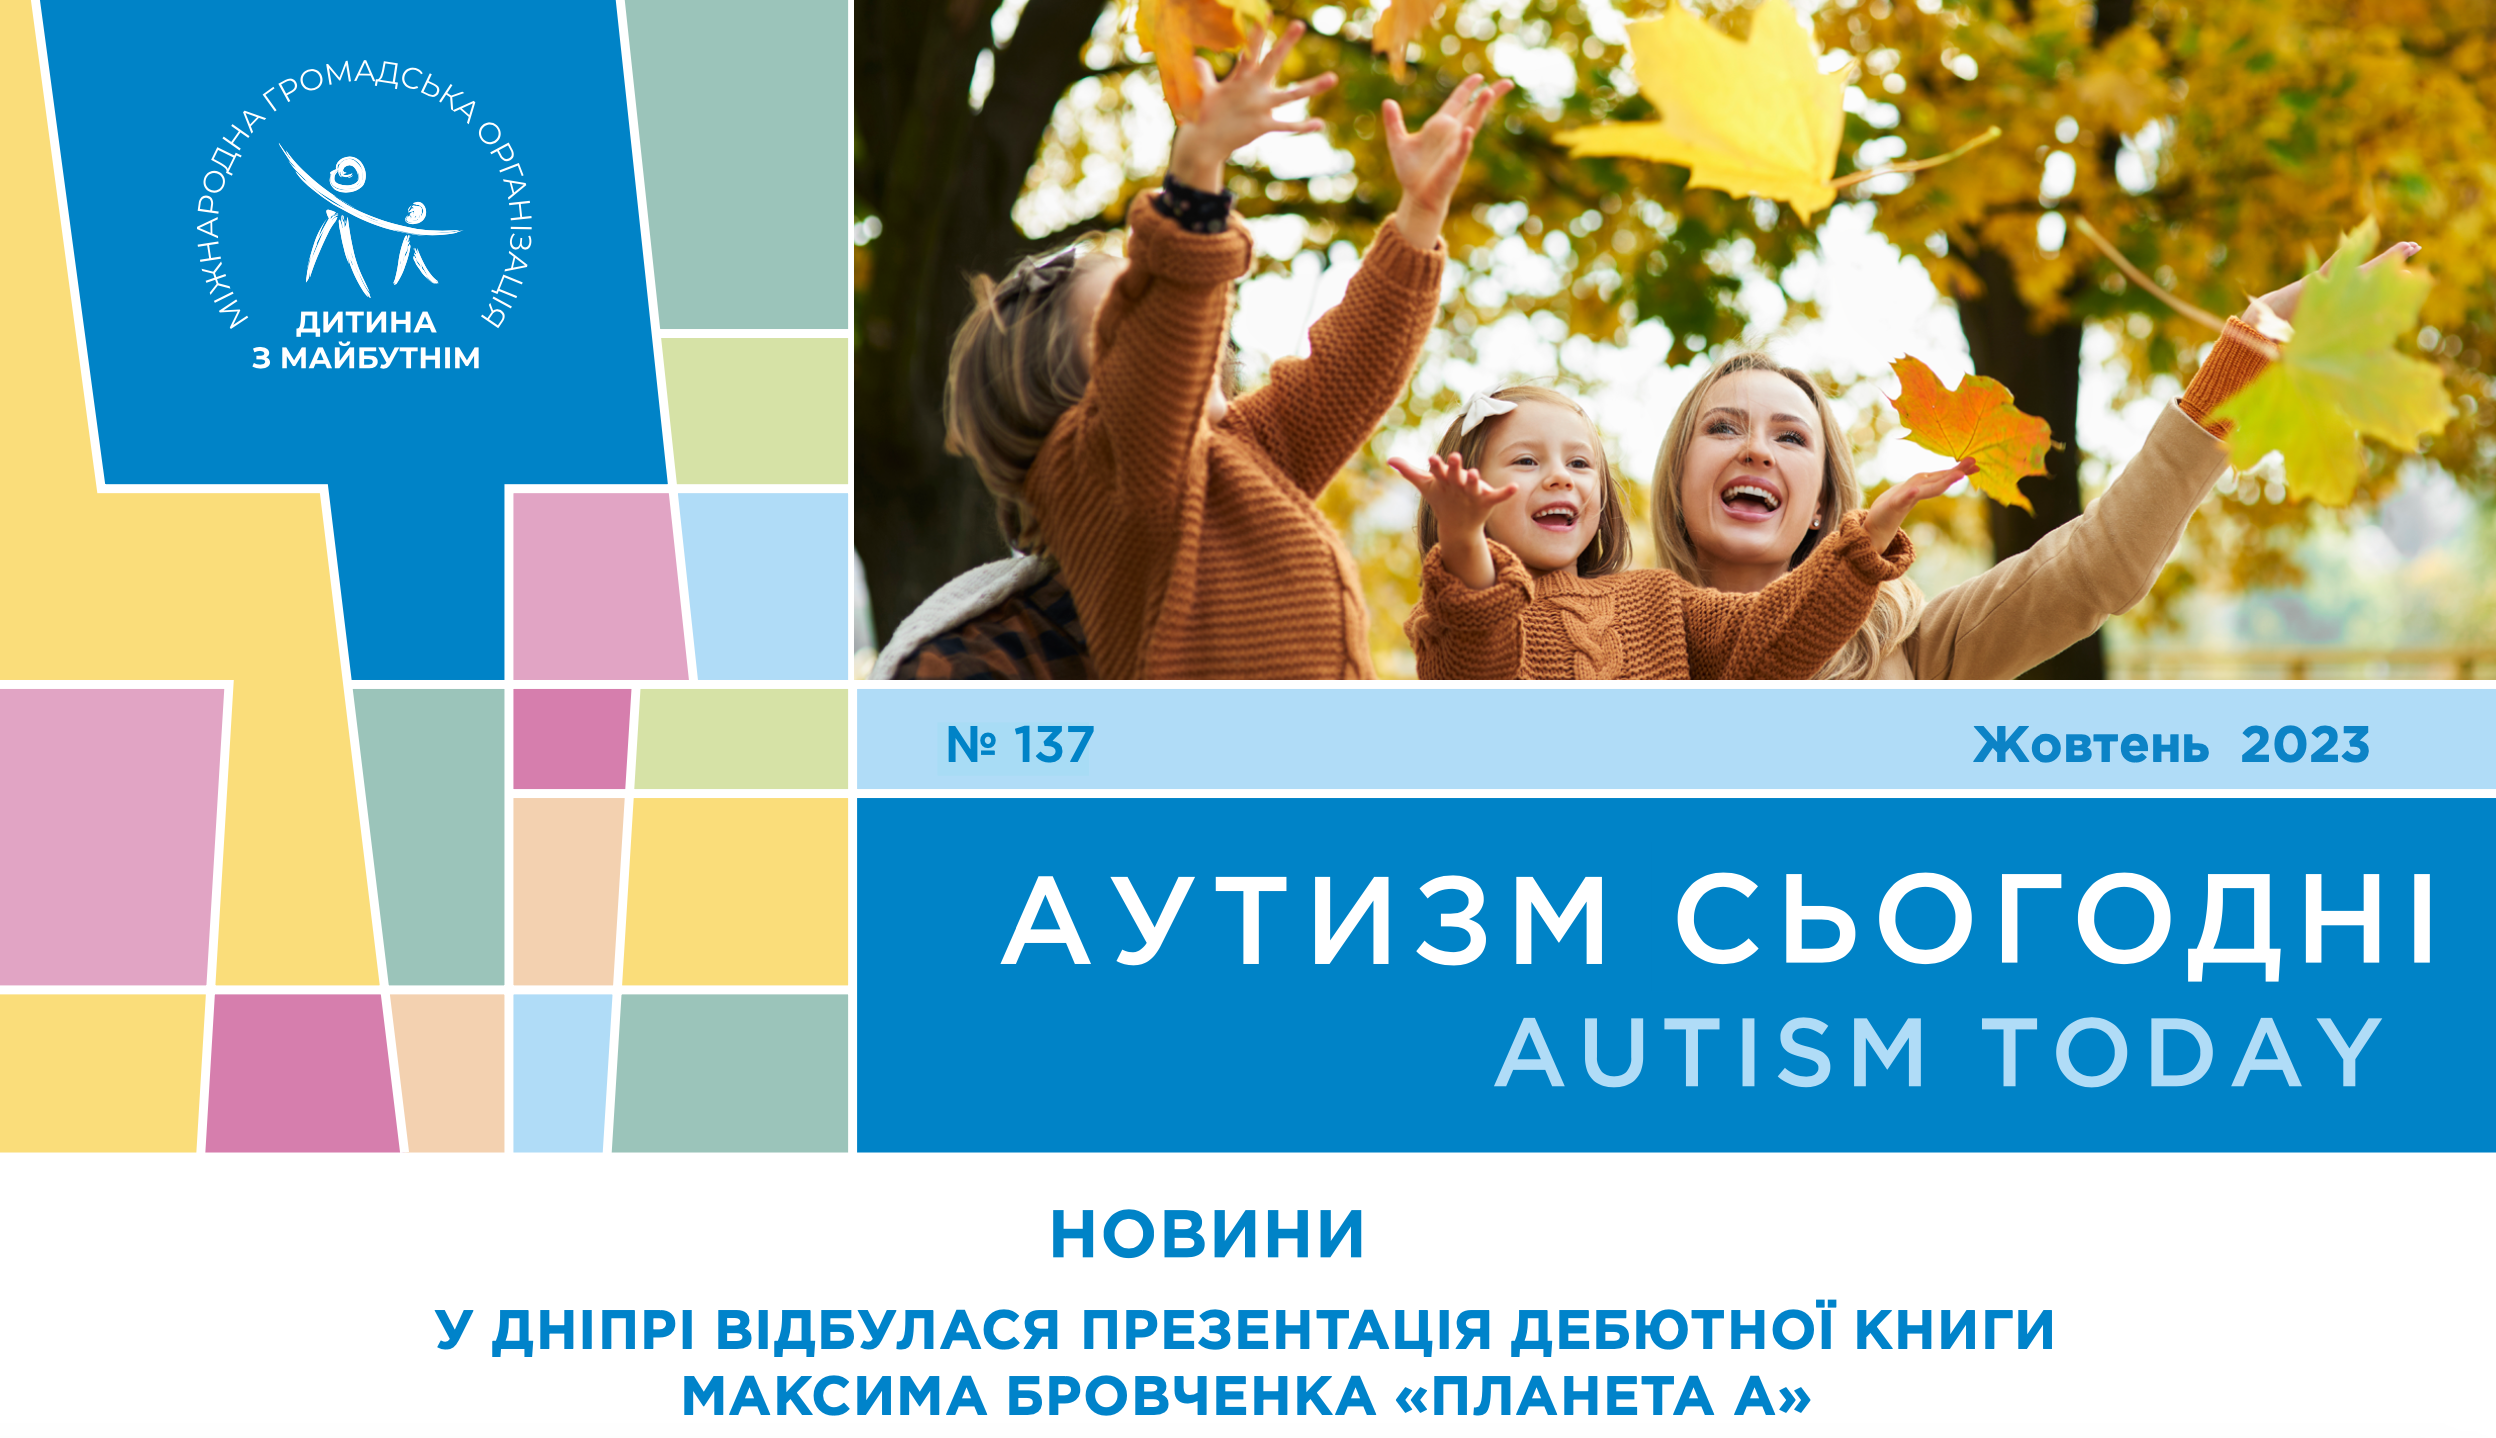 Презентація дебютної книги Максима Бровченка та інтерв’ю з родиною юного митця, дані, які дозволяють діагностувати аутизм раніше та багато іншого – на сторінках “Аутизм сьогодні” за жовтень 2023 року